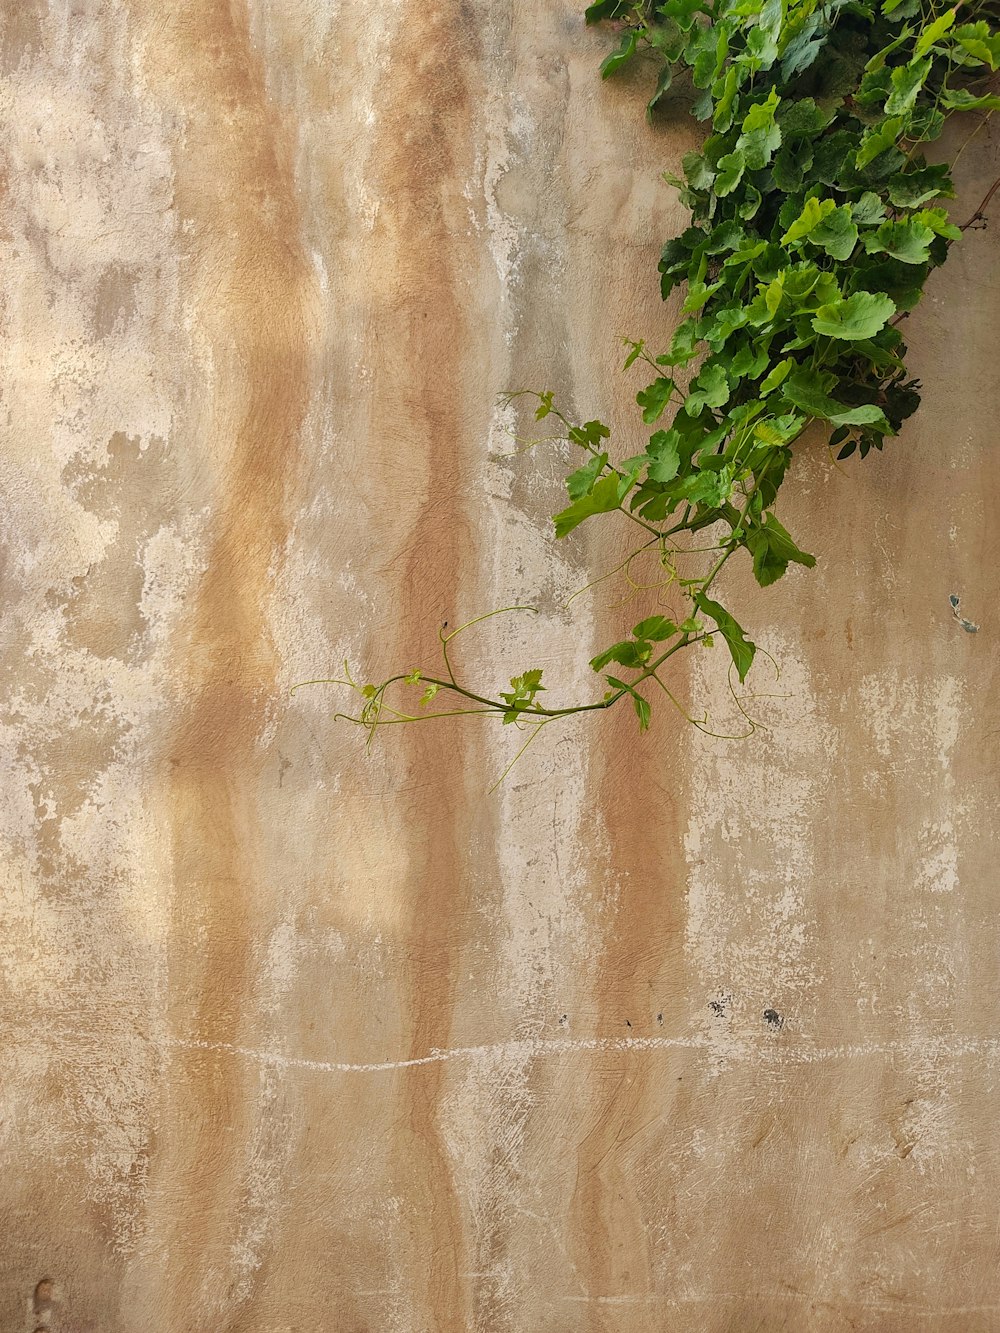 갈색 콘크리트 벽에 녹색 식물